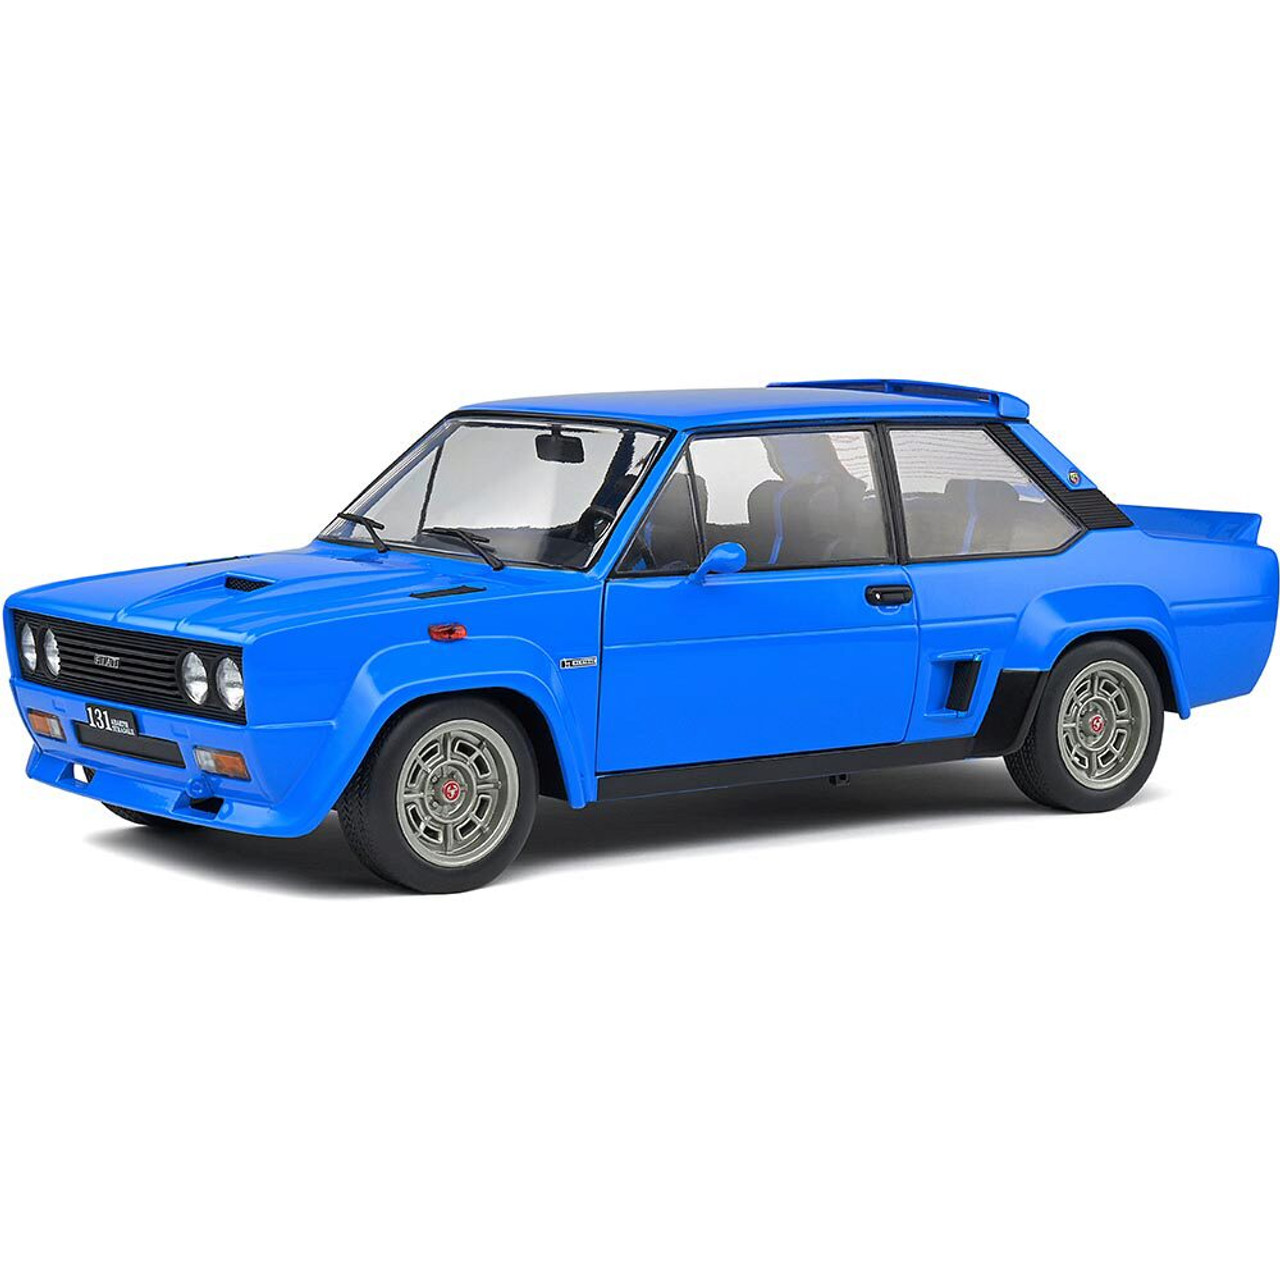 1980 Fiat 131 Abarth Blue Diecast Model Car